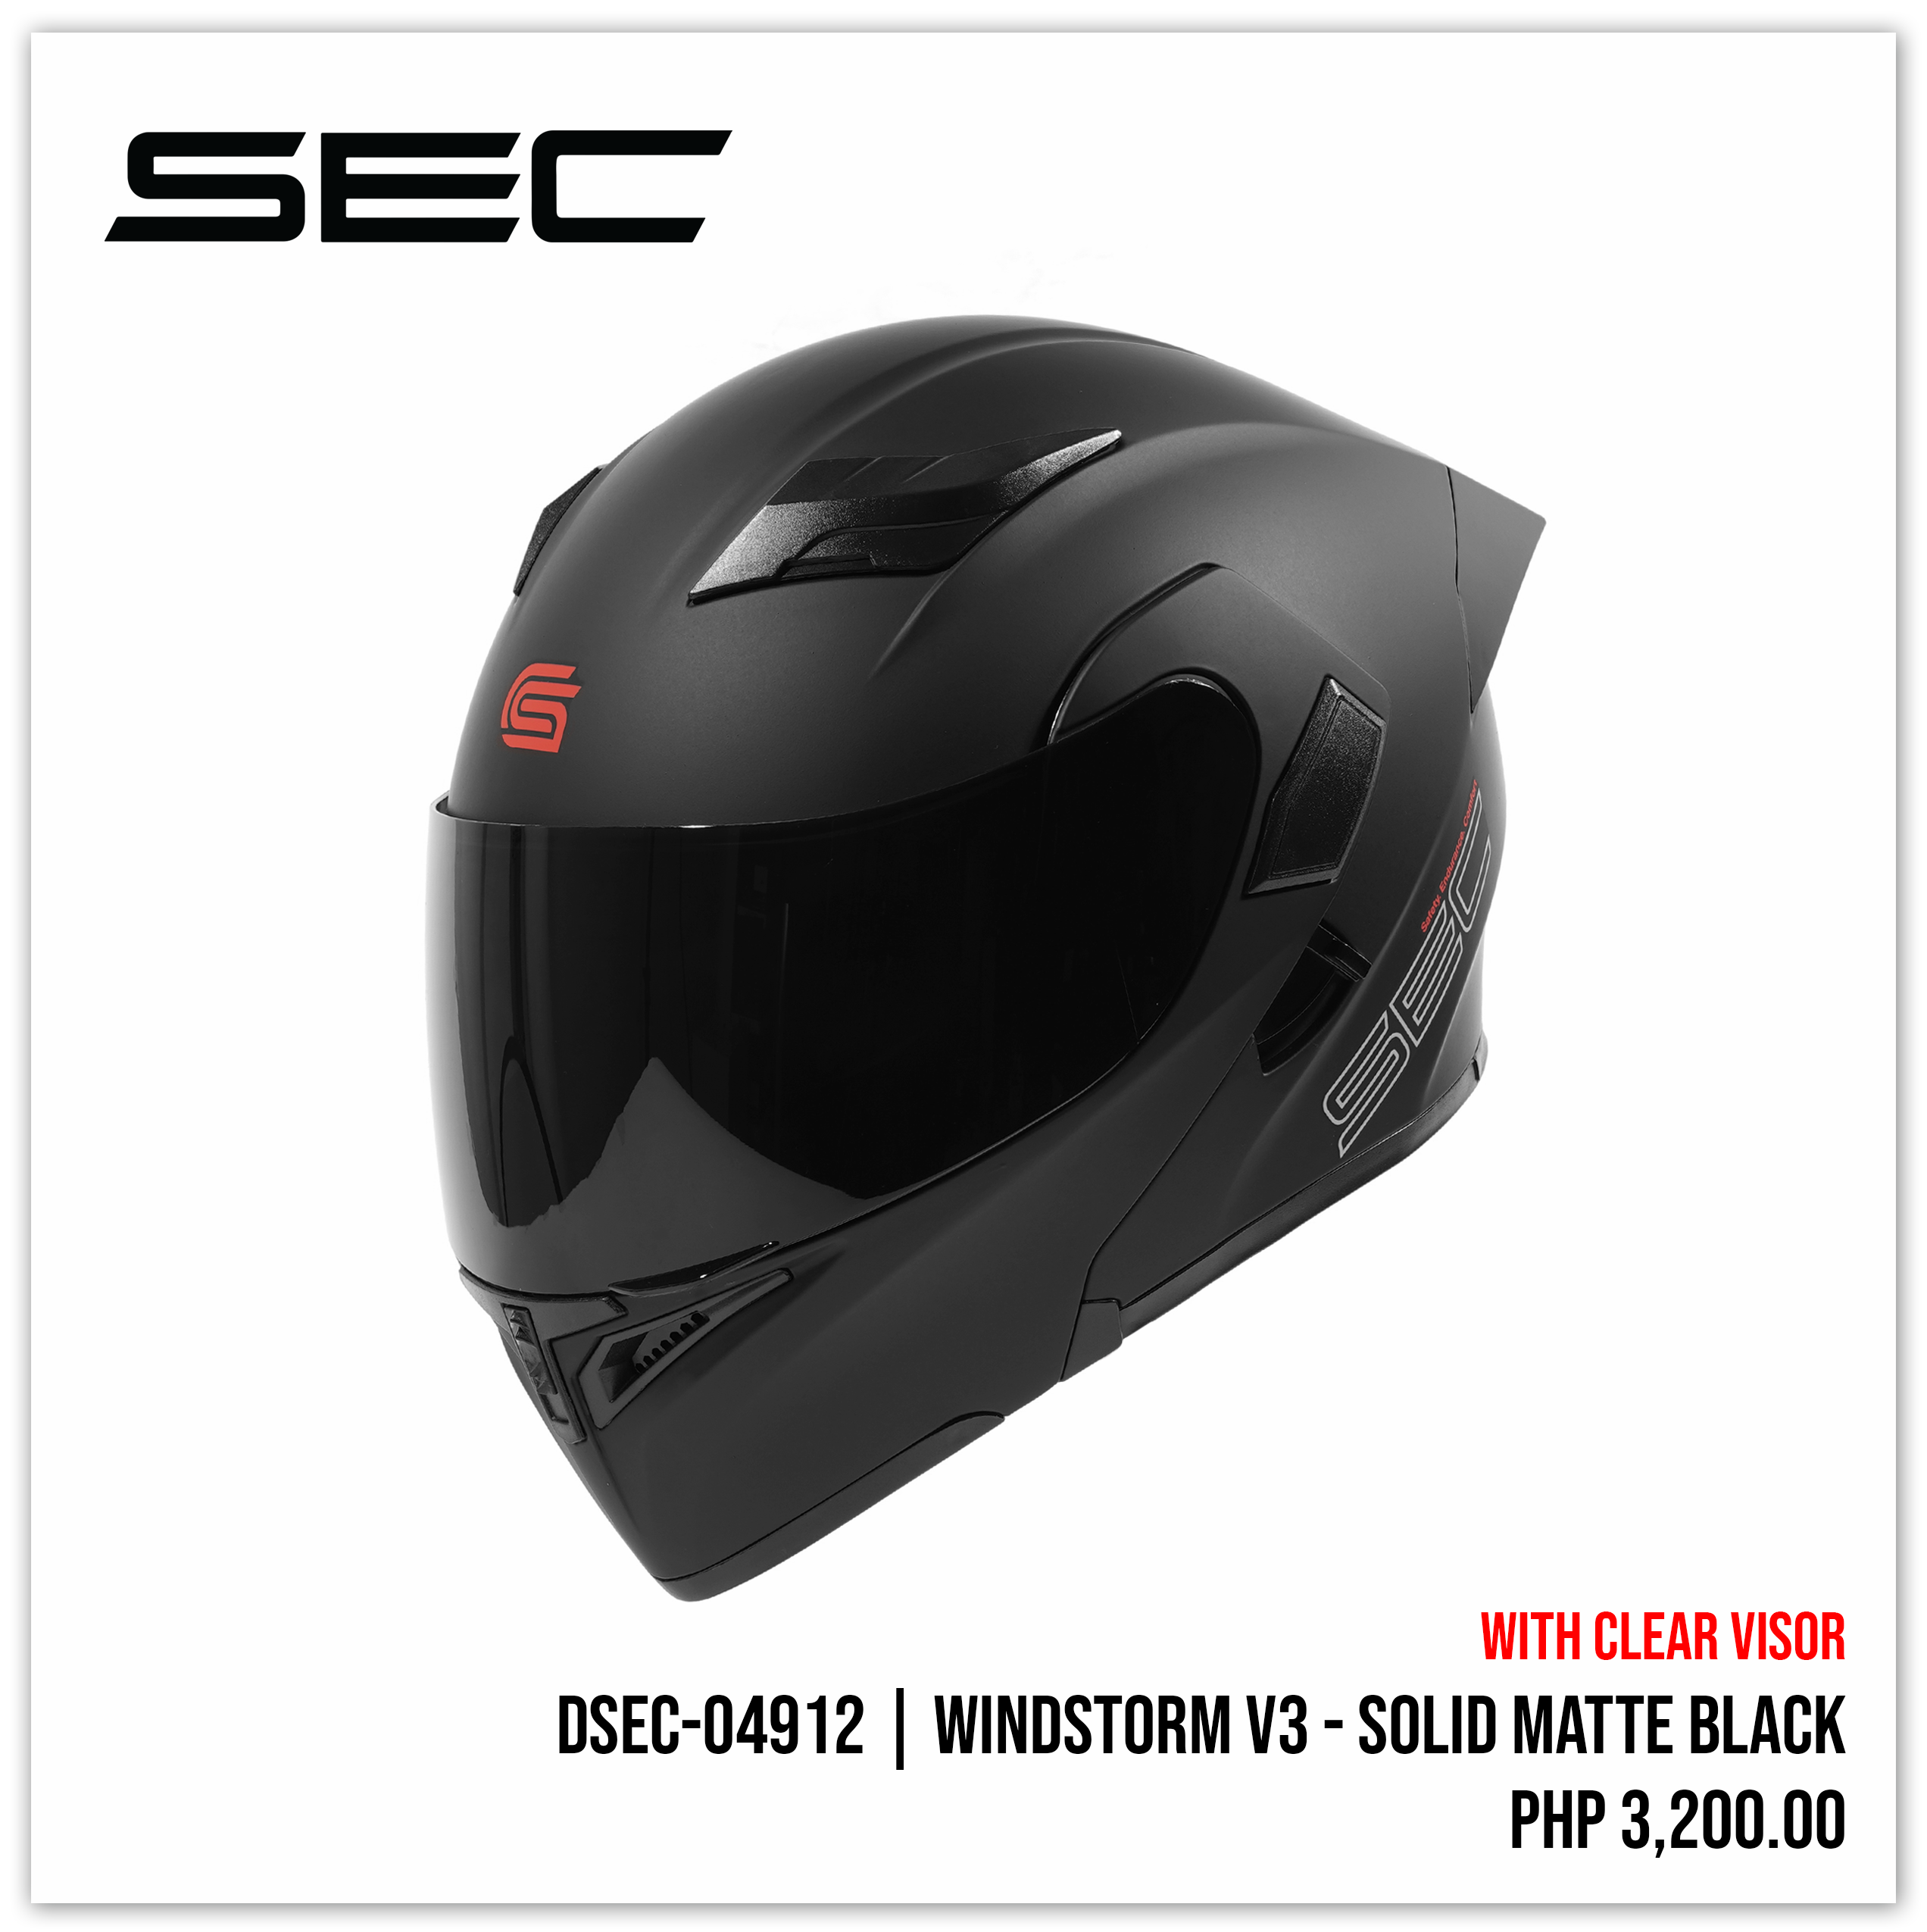 Windstorm V3 - Solid Matte Black